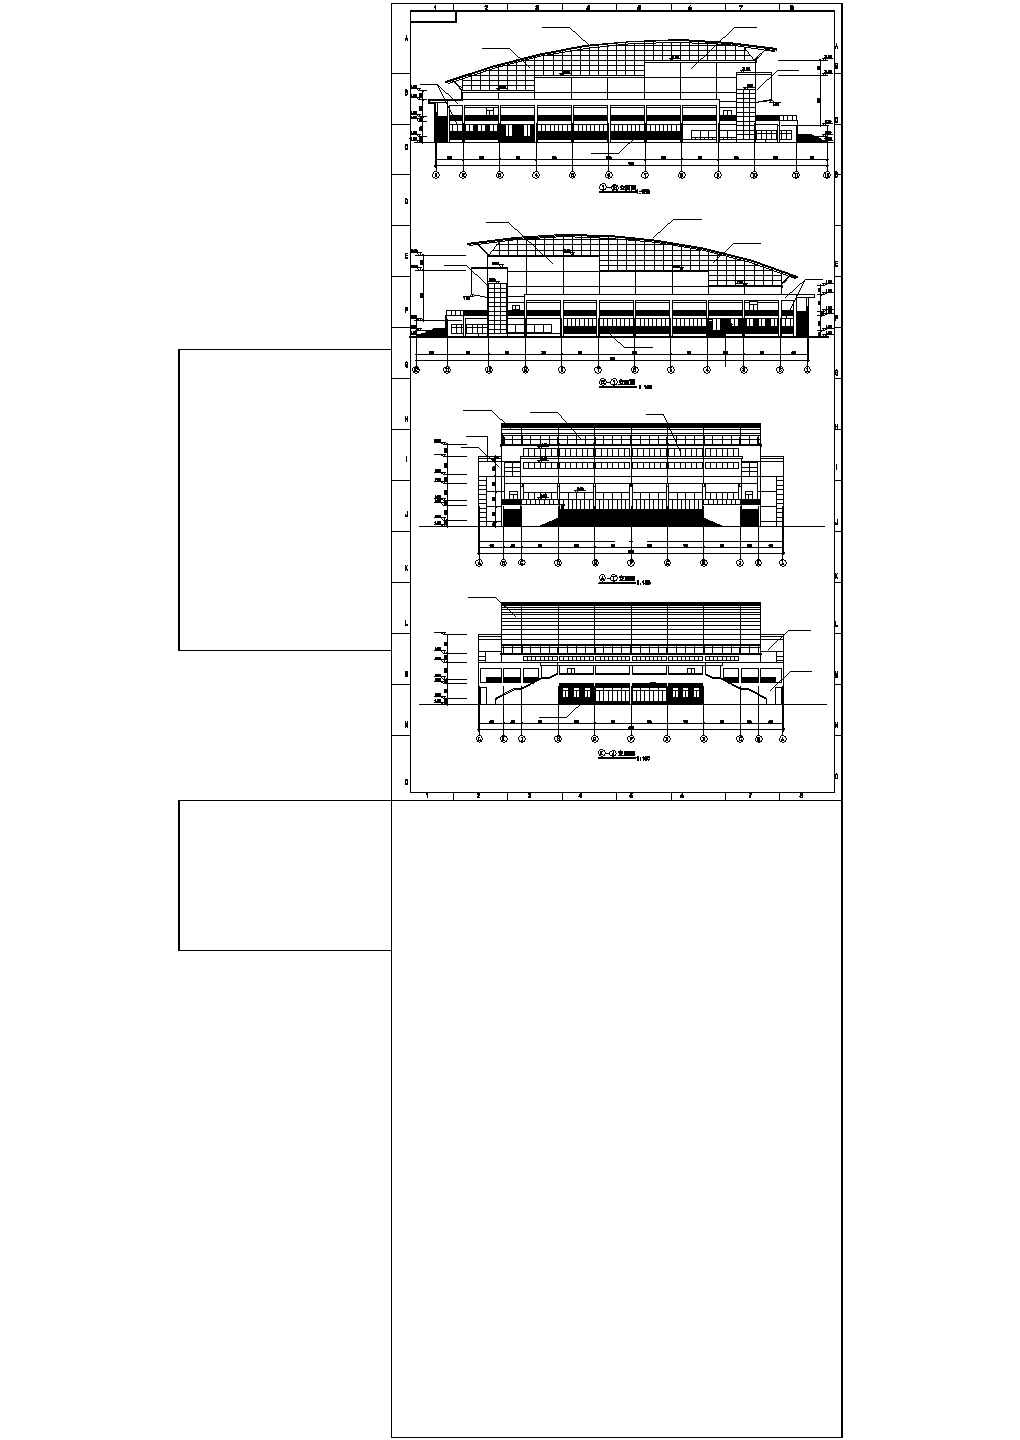 长77.6米 宽60.4米 2层 5780平米体育建筑施工图【平立剖 观众厅观众席平面 楼梯 门窗 节点详图 目录 说明】